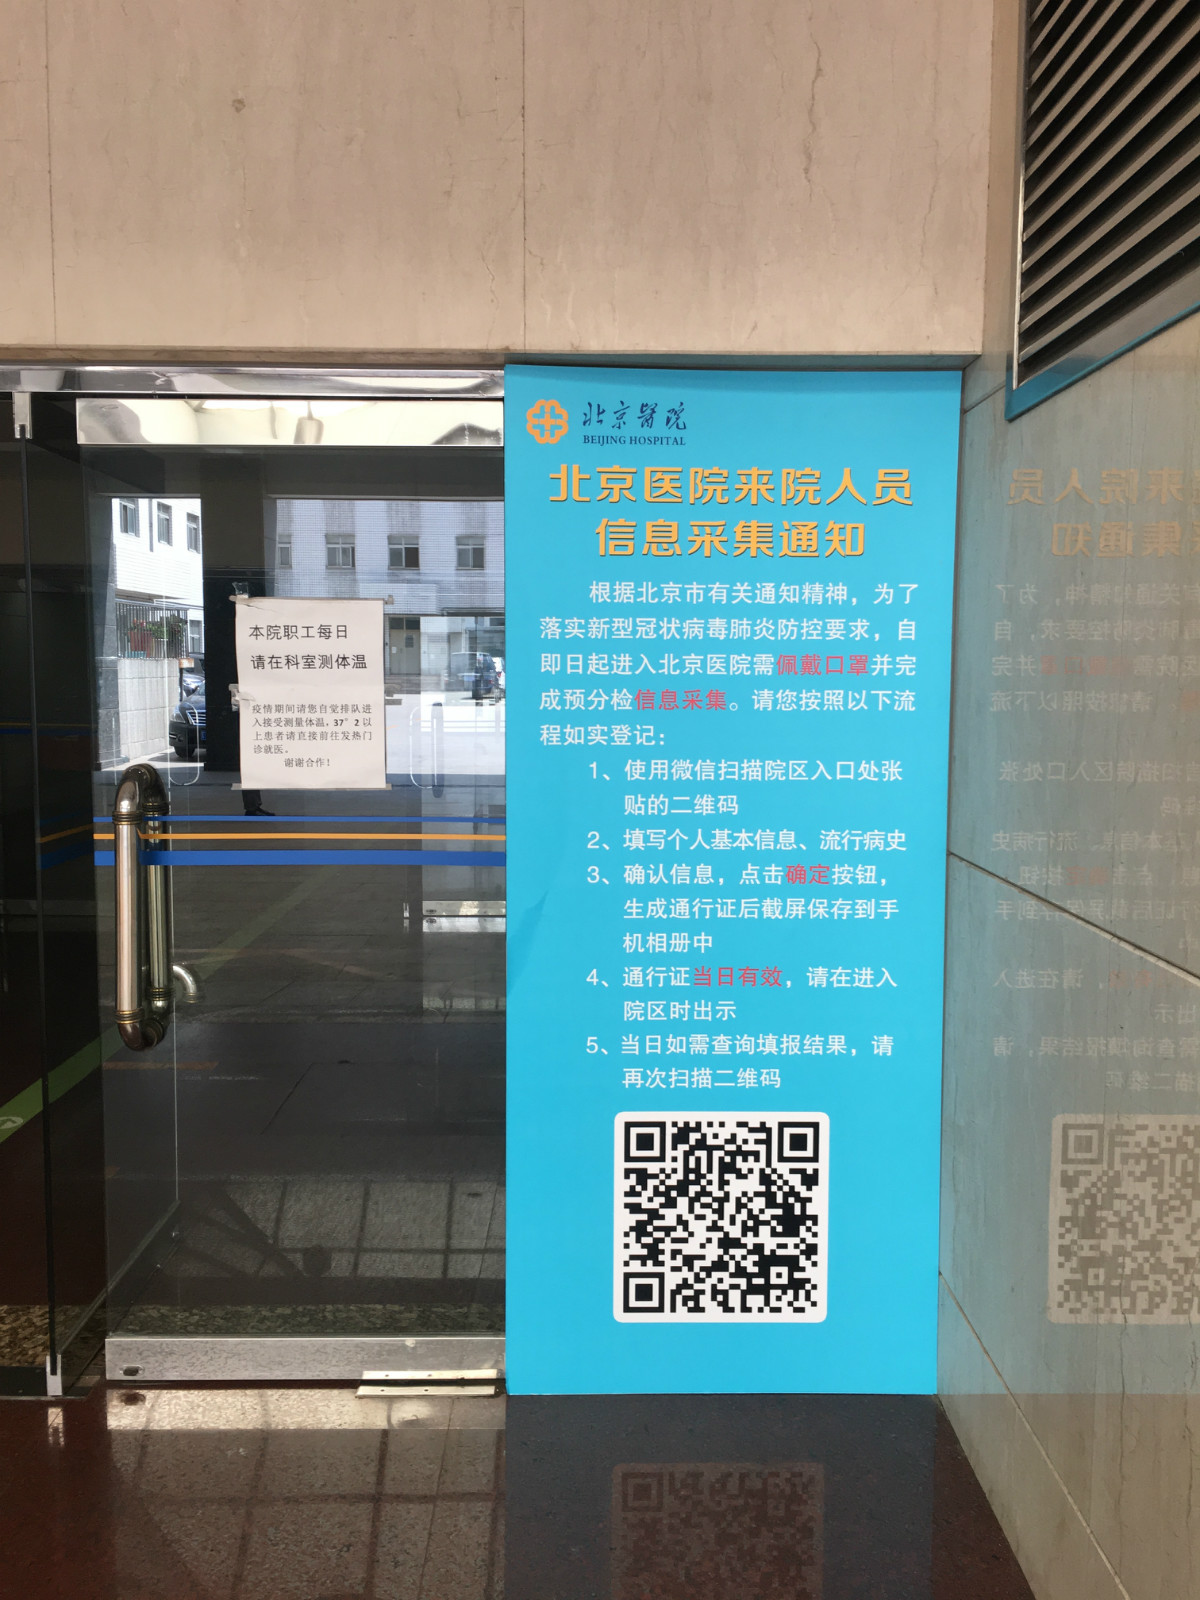 北京医院要求进入医院需完成预分拣信息采集,需要扫描二维码,填写个人